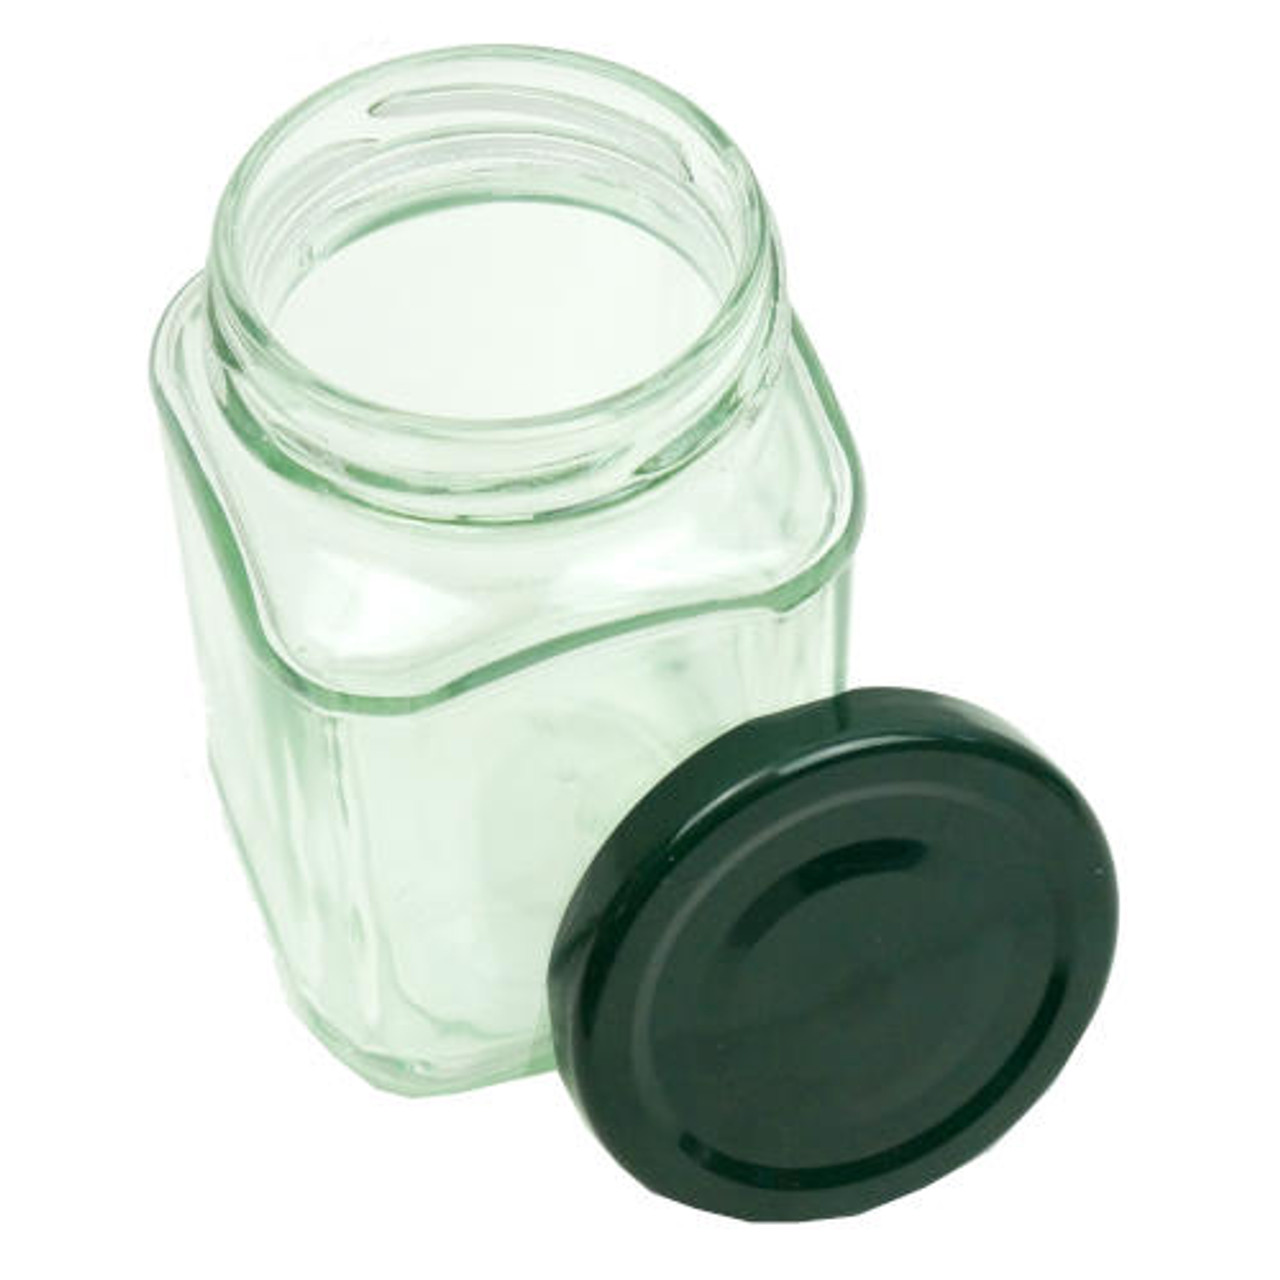 Short 8 oz Glass Jar with Matte Black Lid